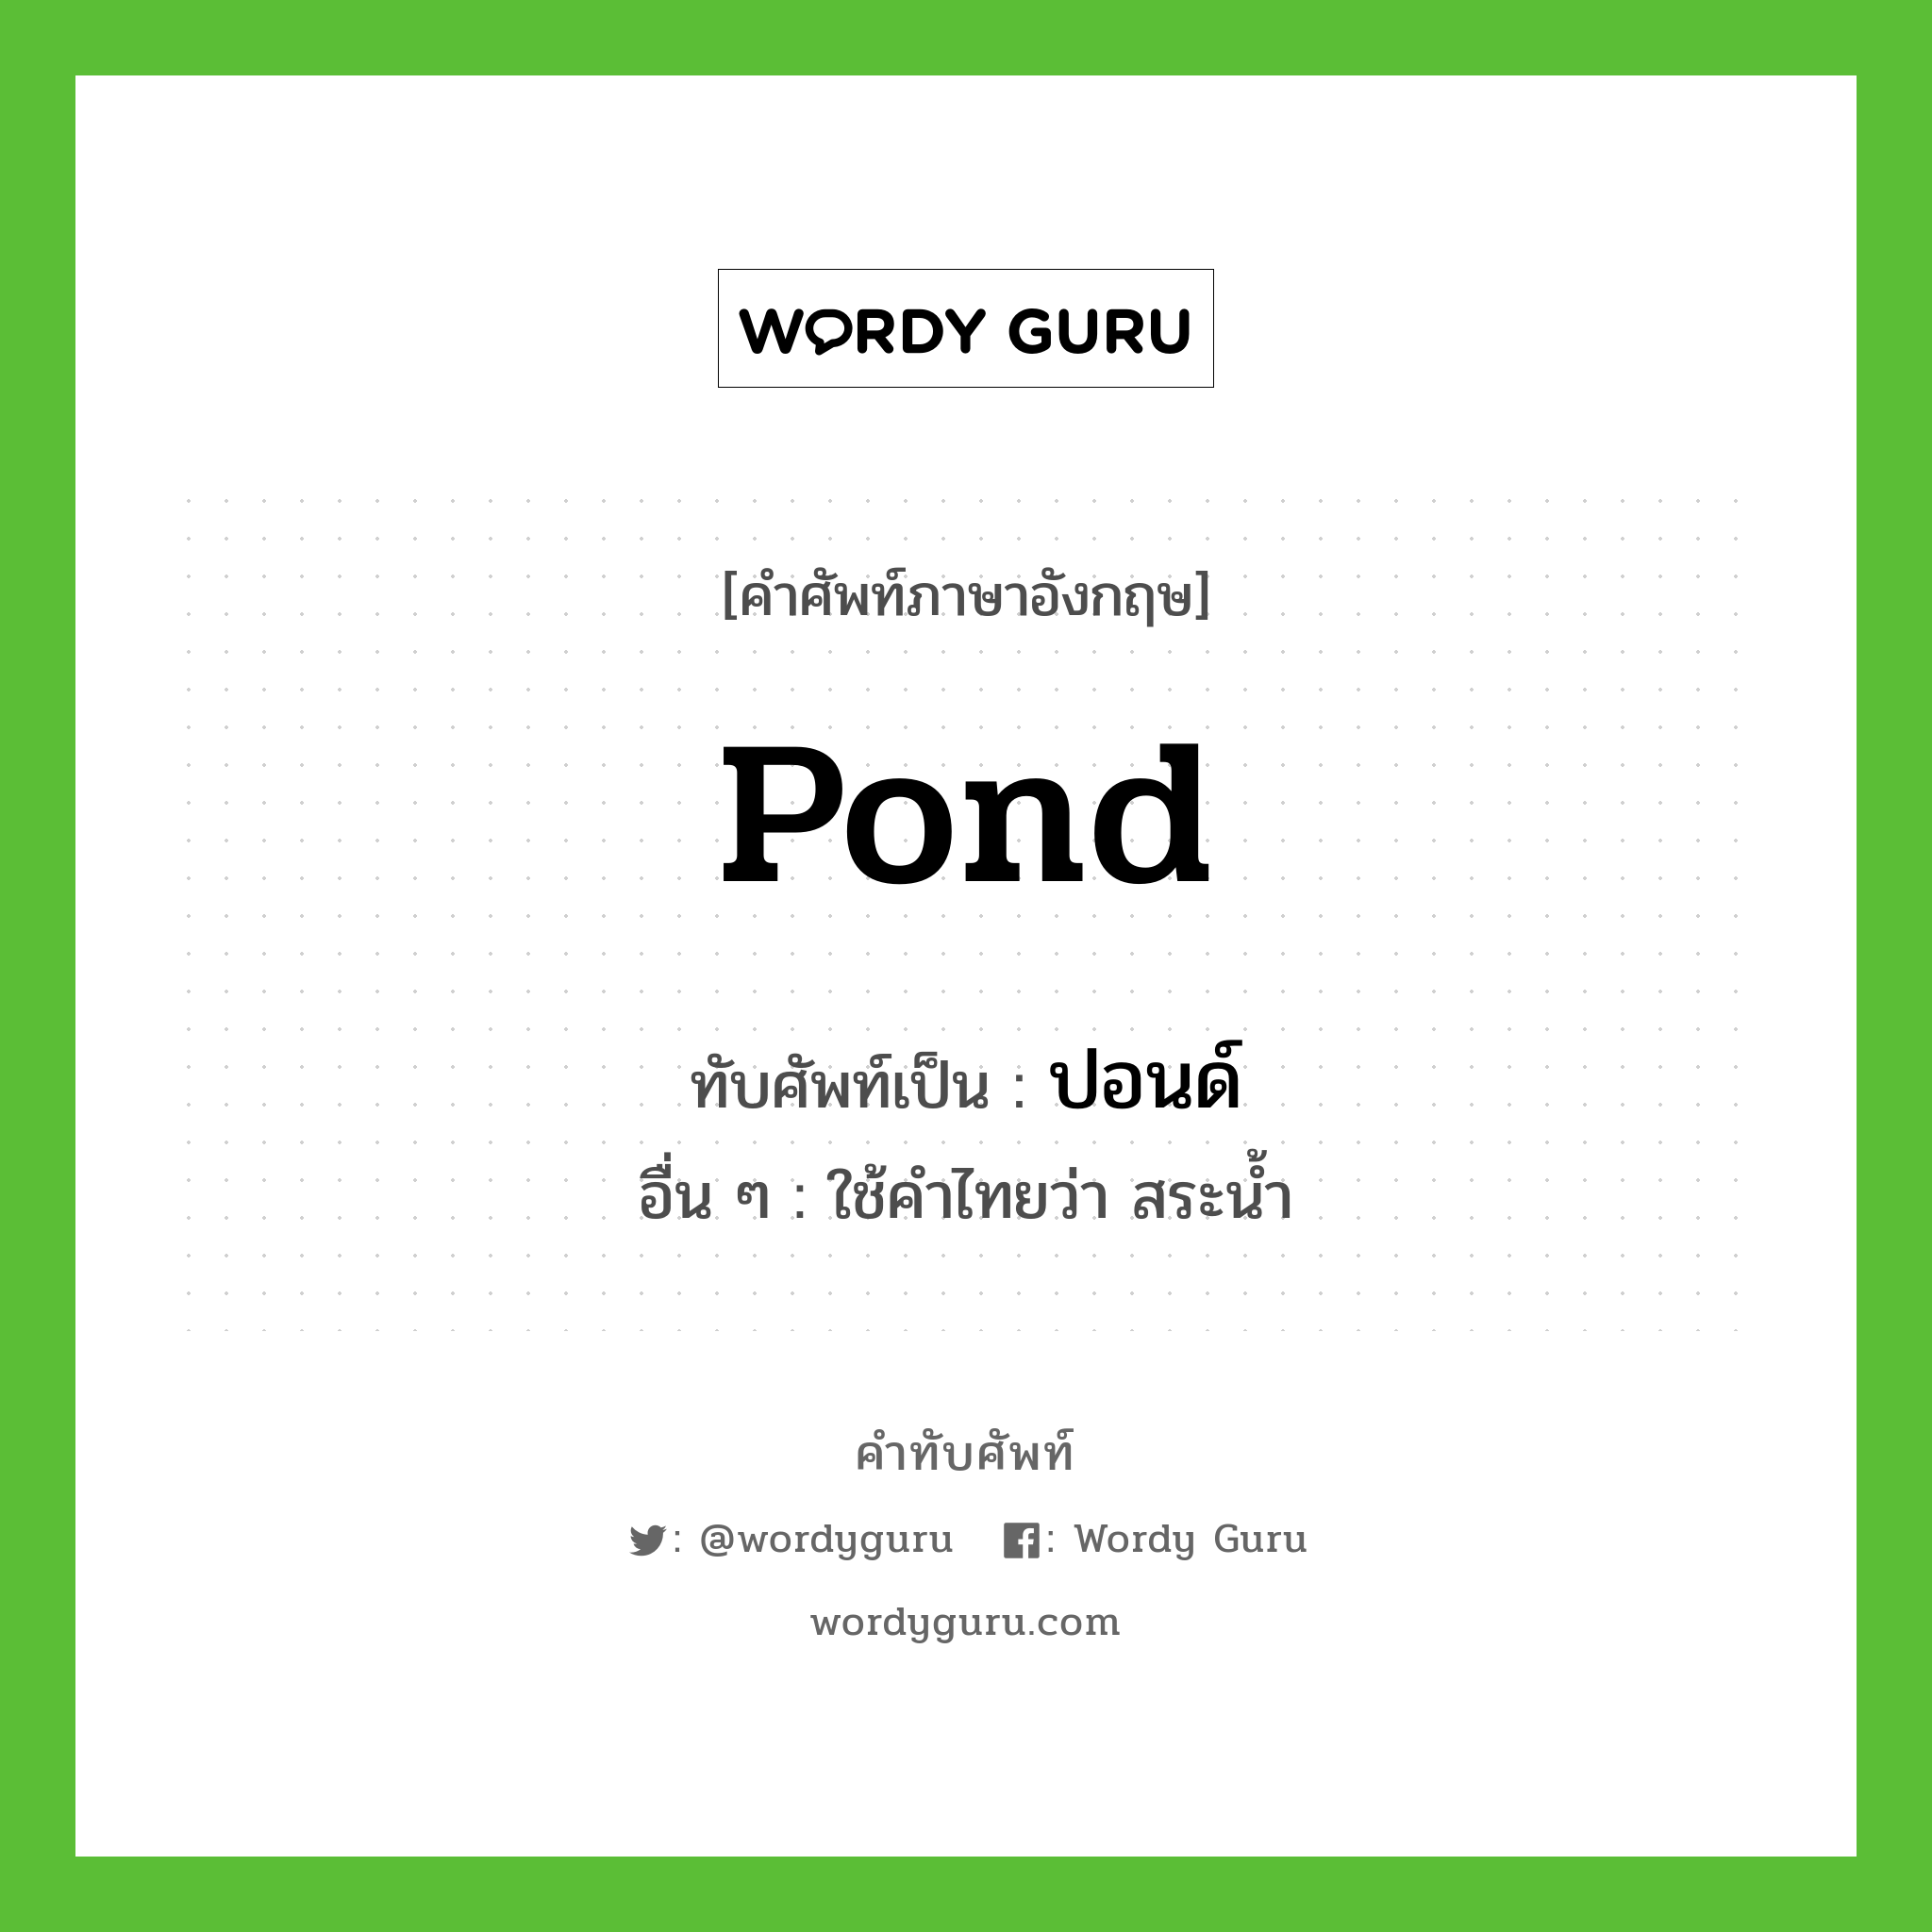 pond เขียนเป็นคำไทยว่าอะไร?, คำศัพท์ภาษาอังกฤษ pond ทับศัพท์เป็น ปอนด์ อื่น ๆ ใช้คำไทยว่า สระน้ำ